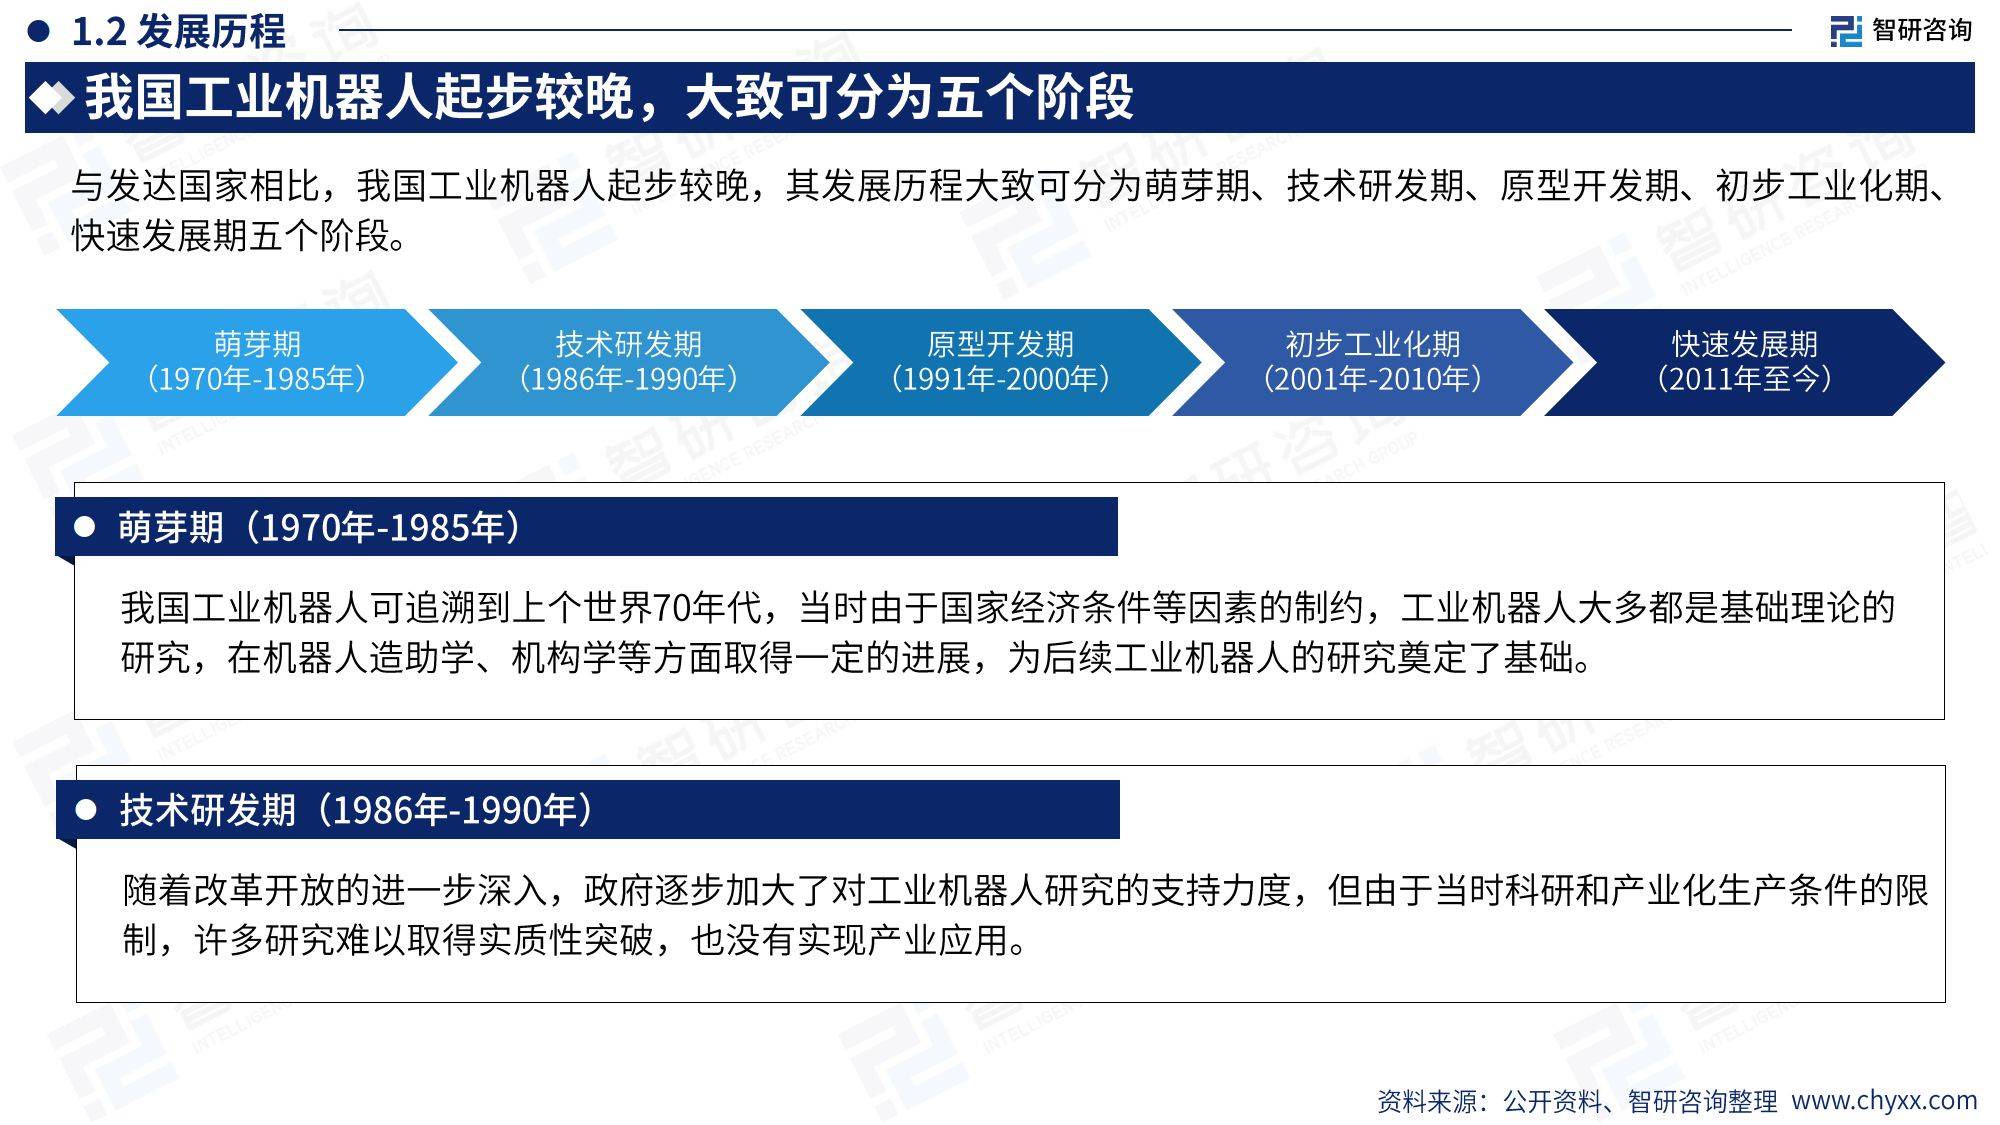 2023年中国工业机器人行业现状及发展趋势研究报告(附下载)